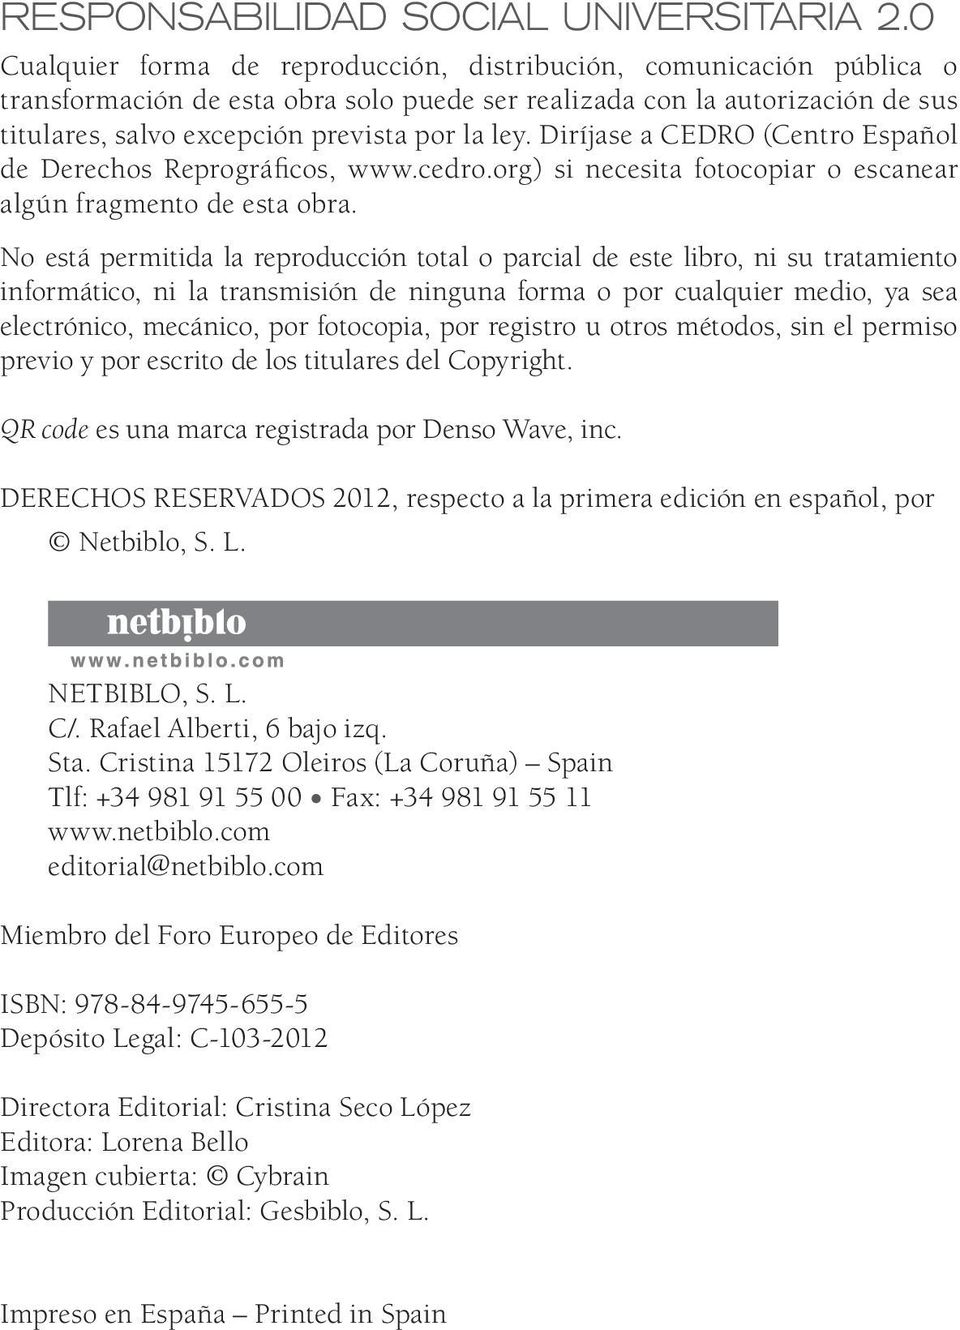 Diríjase a CEDRO (Centro Español de Derechos Reprográficos, www.cedro.org) si necesita fotocopiar o escanear algún fragmento de esta obra.